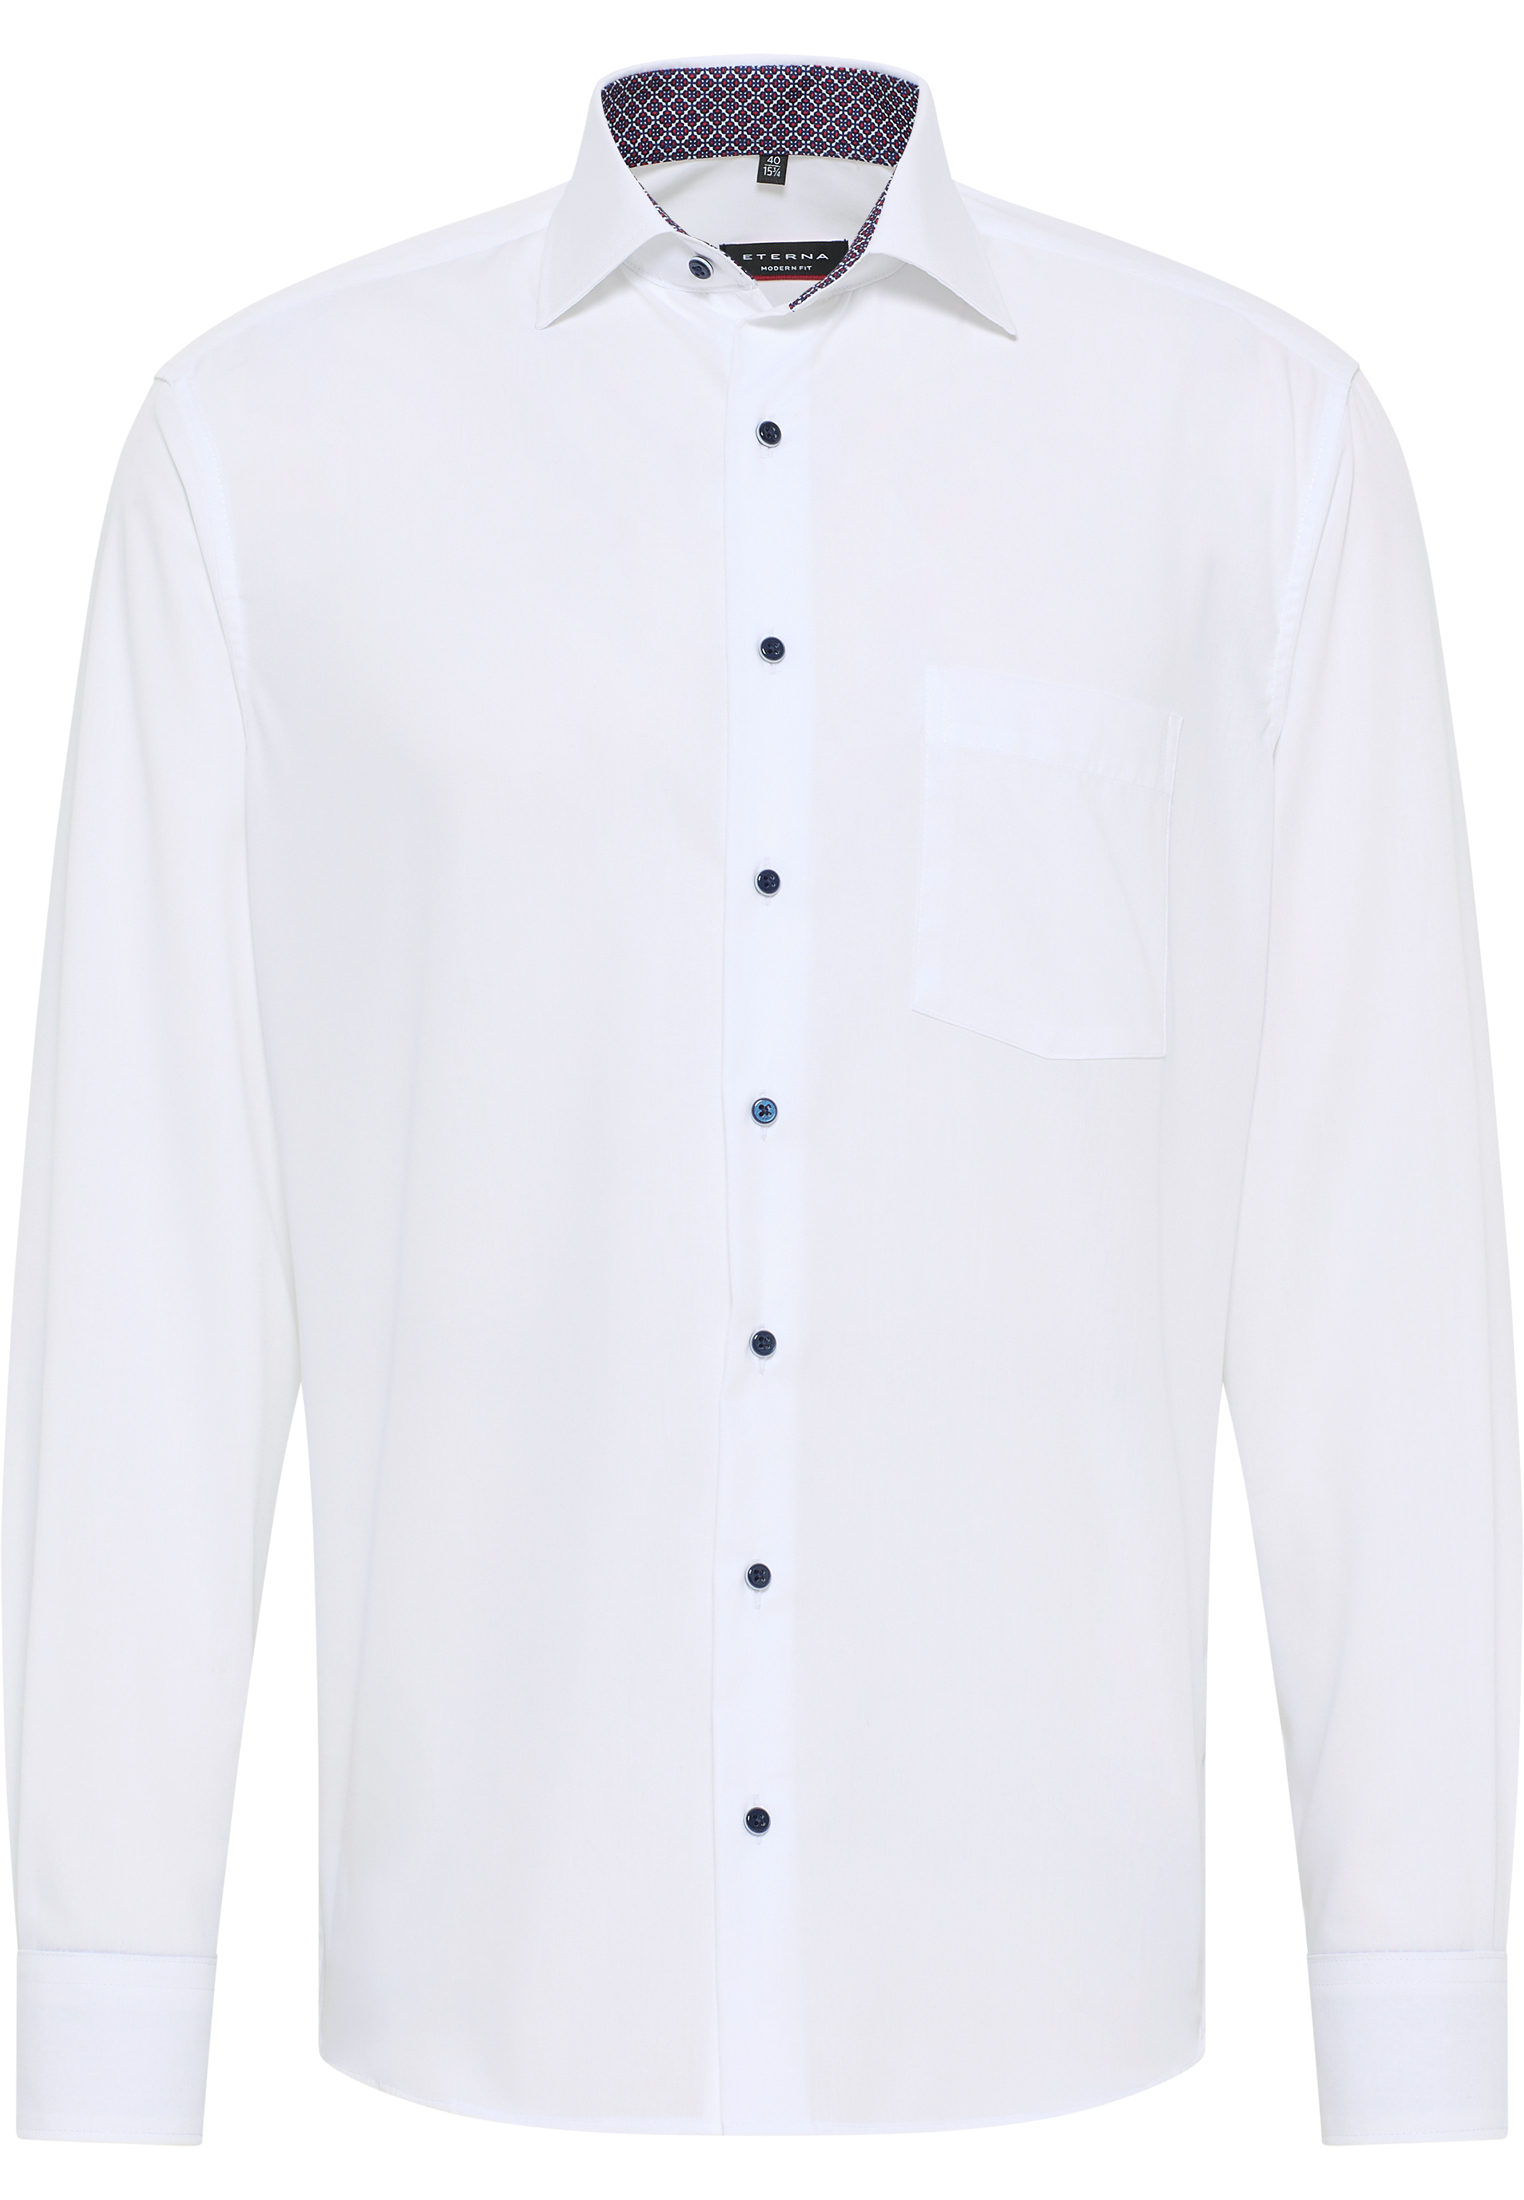 MODERN FIT Original Shirt in weiß unifarben